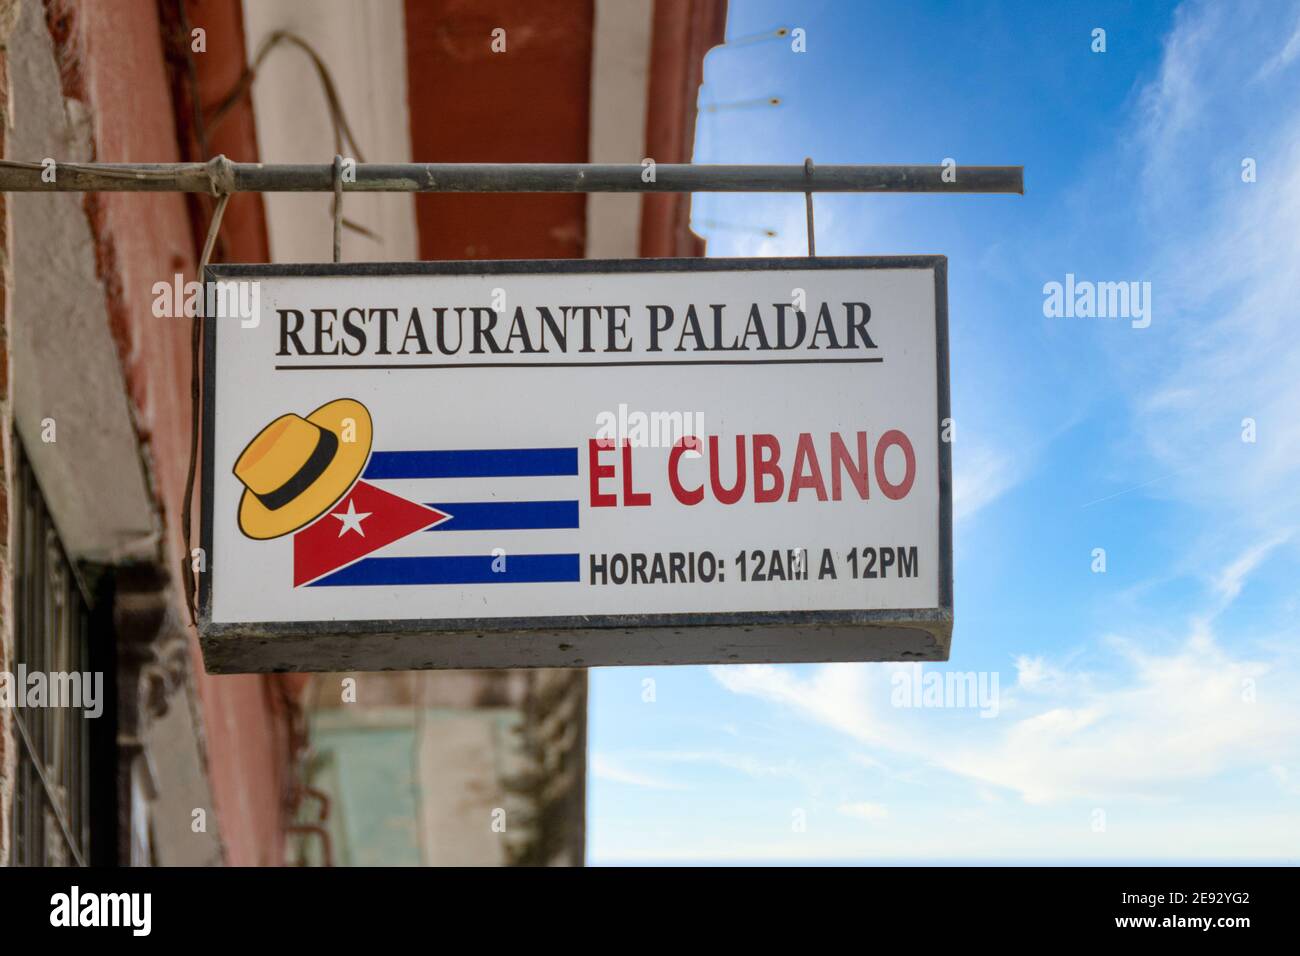 Restaurante paladar 'El Cubano' in Old Havana, Cuba Stock Photo